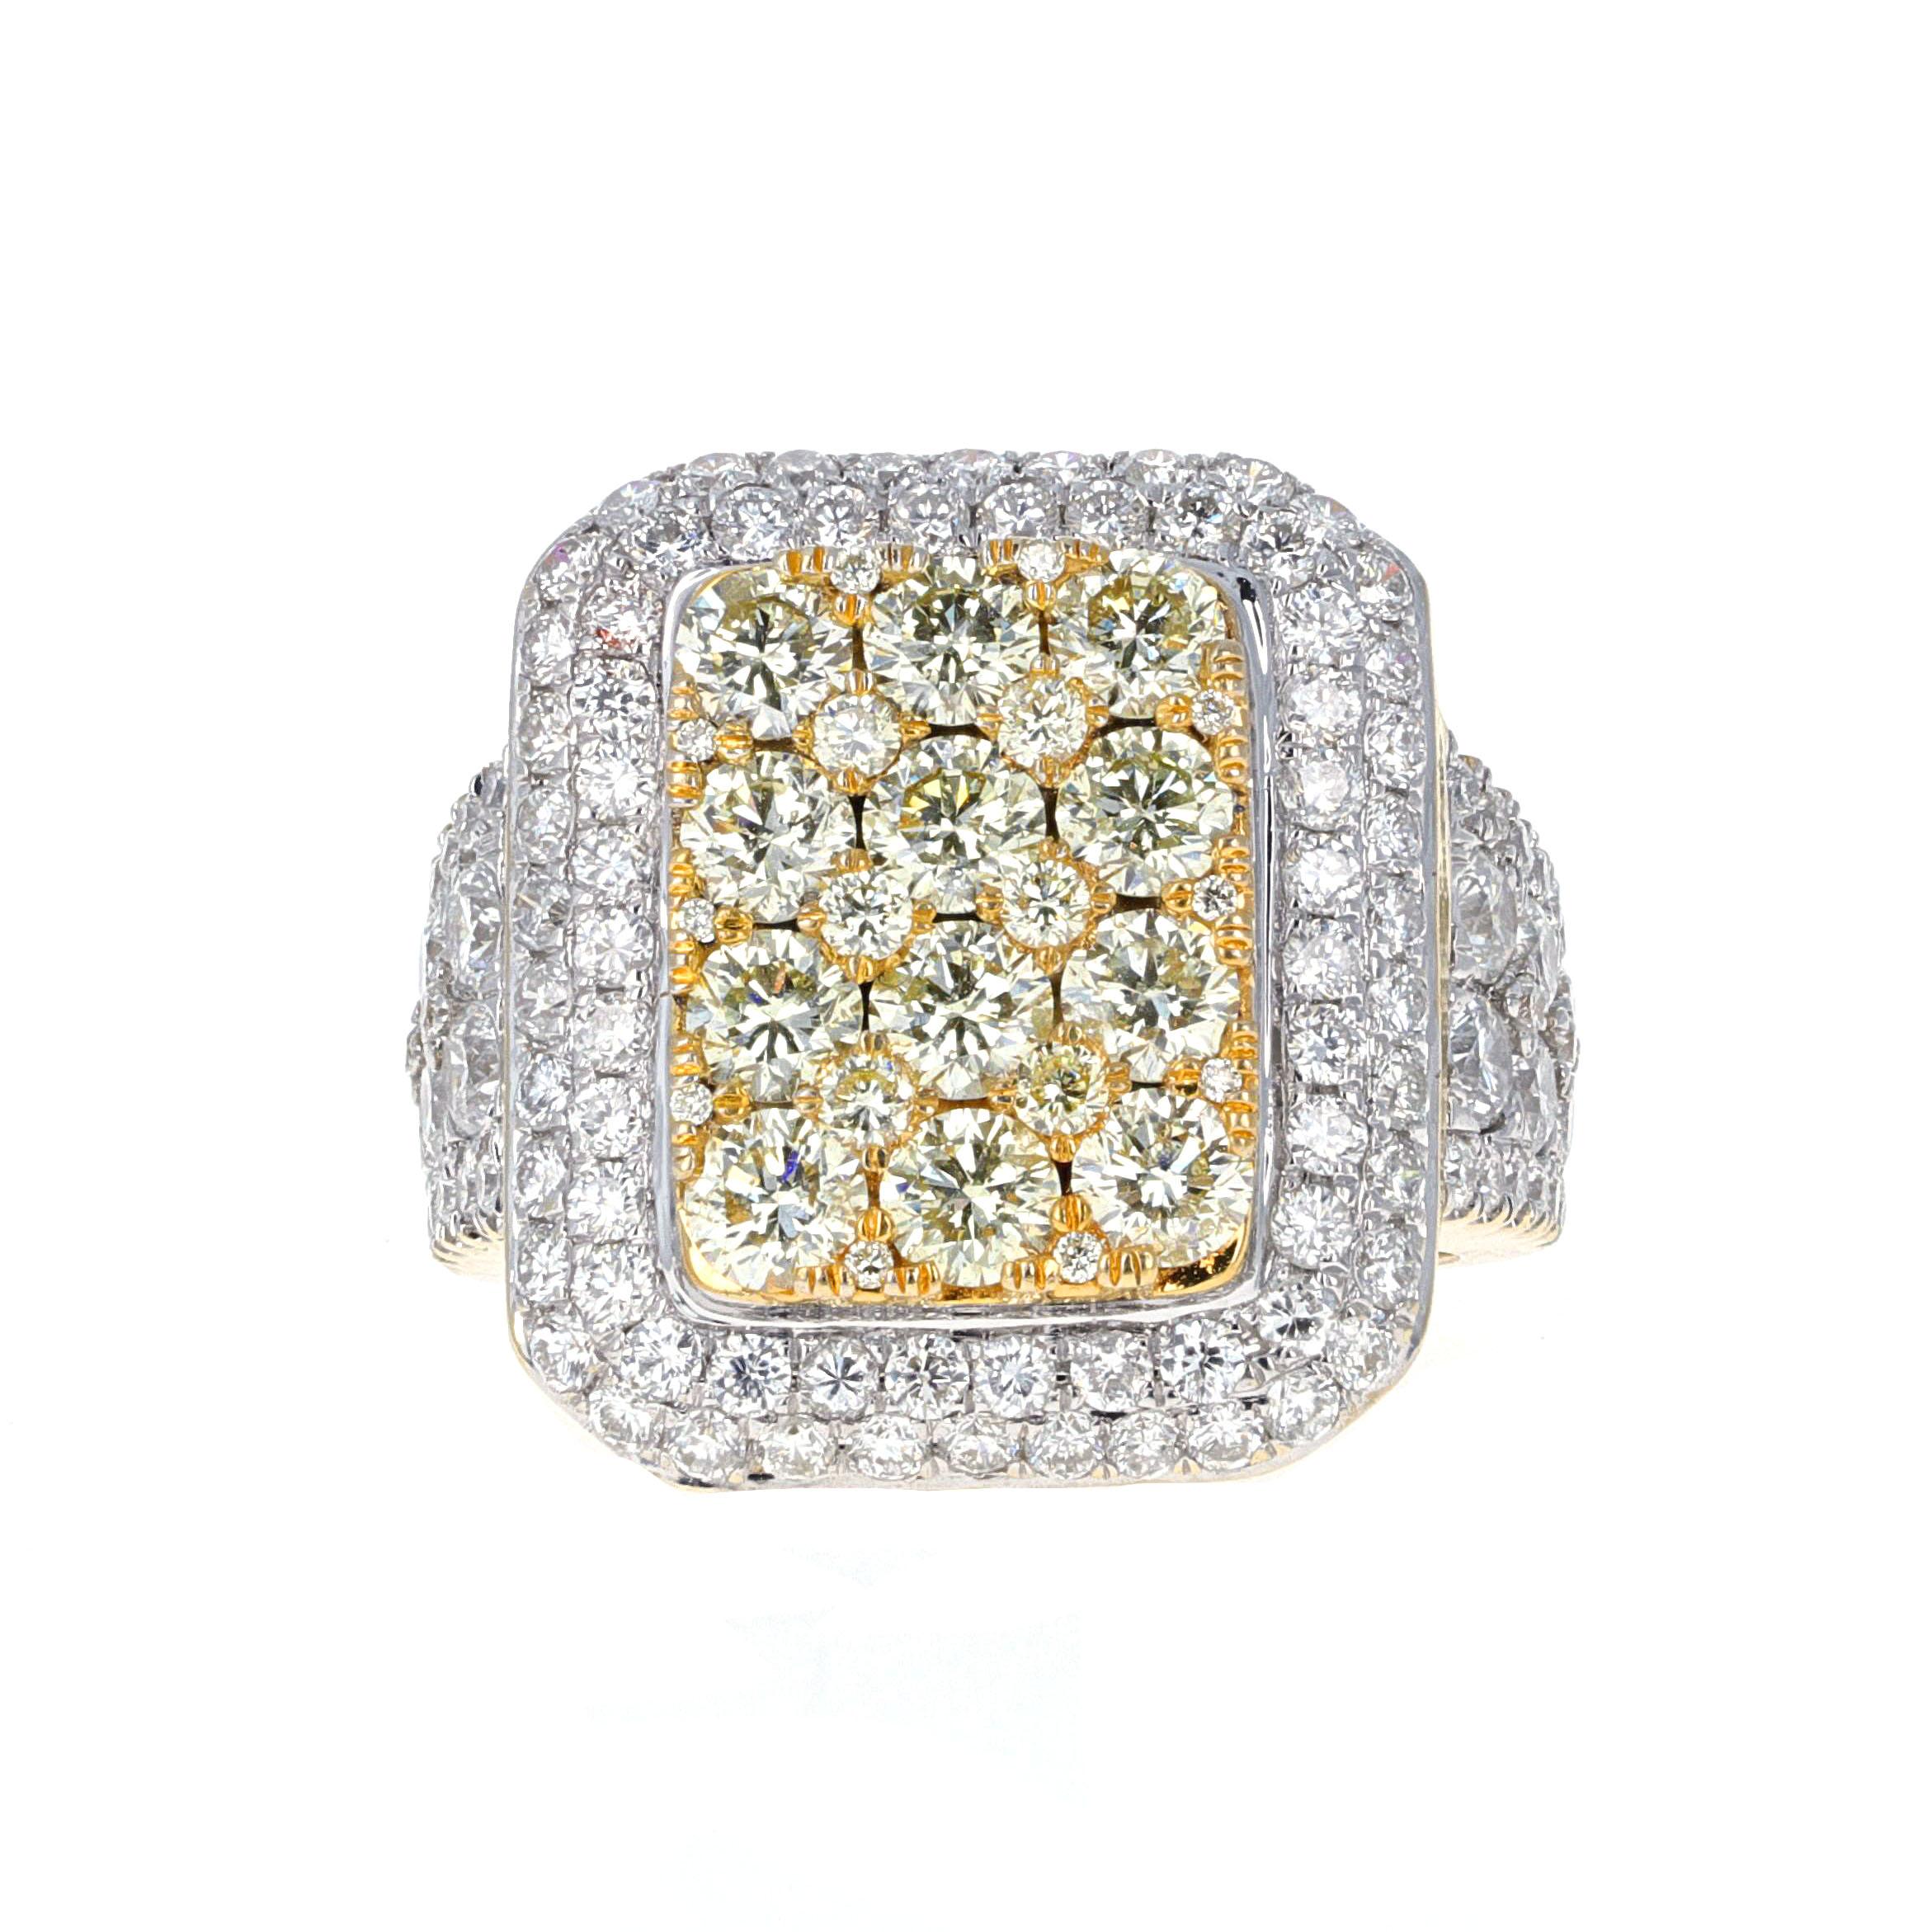 Diamantring aus 18 Karat Gelbgold und Weißgold. Der Ring hat 128 runde weiße Brillanten mit einem geschätzten Gesamtgewicht von 3,00 Karat. 12 runde gelbe Brillanten haben ein geschätztes Gesamtgewicht von 2,00 Karat. 
Der Ring funkelt in alle